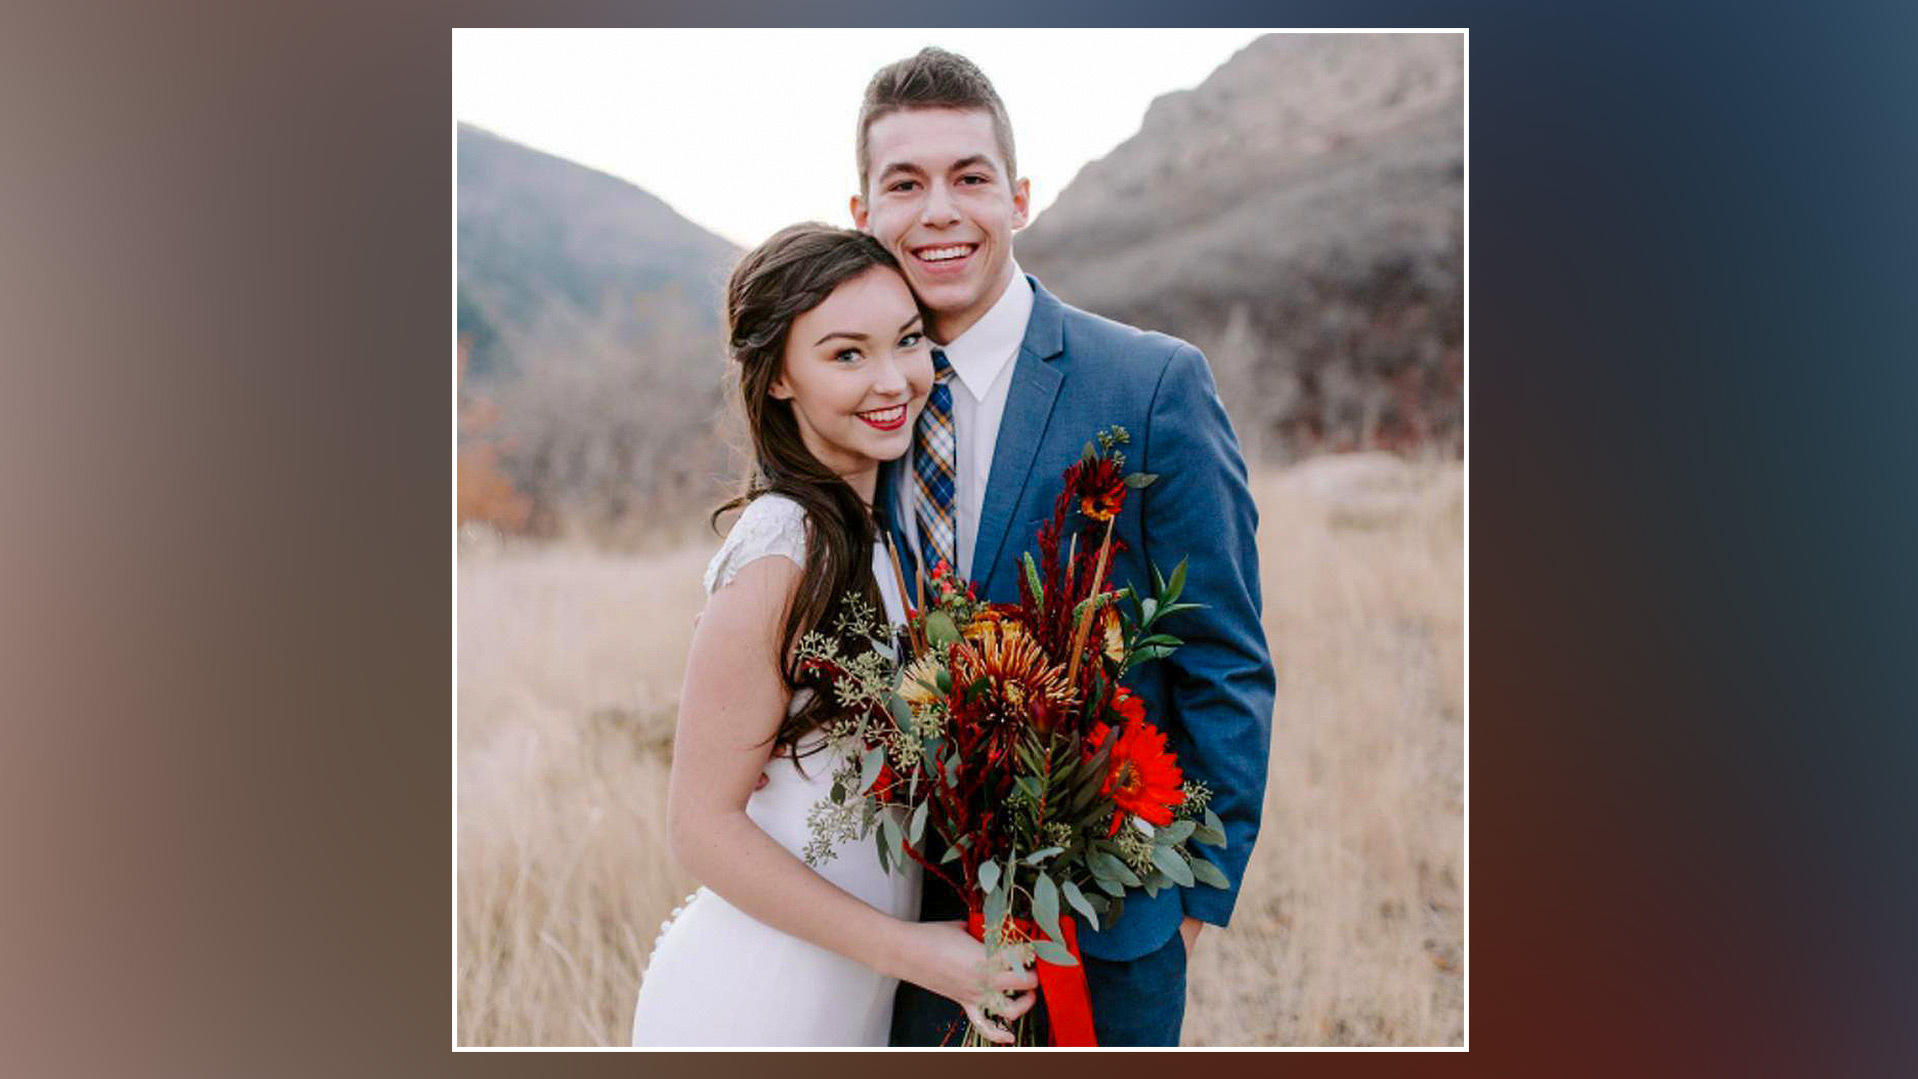 Ricky und Alexis bei ihrer Hochzeit im September 2018.